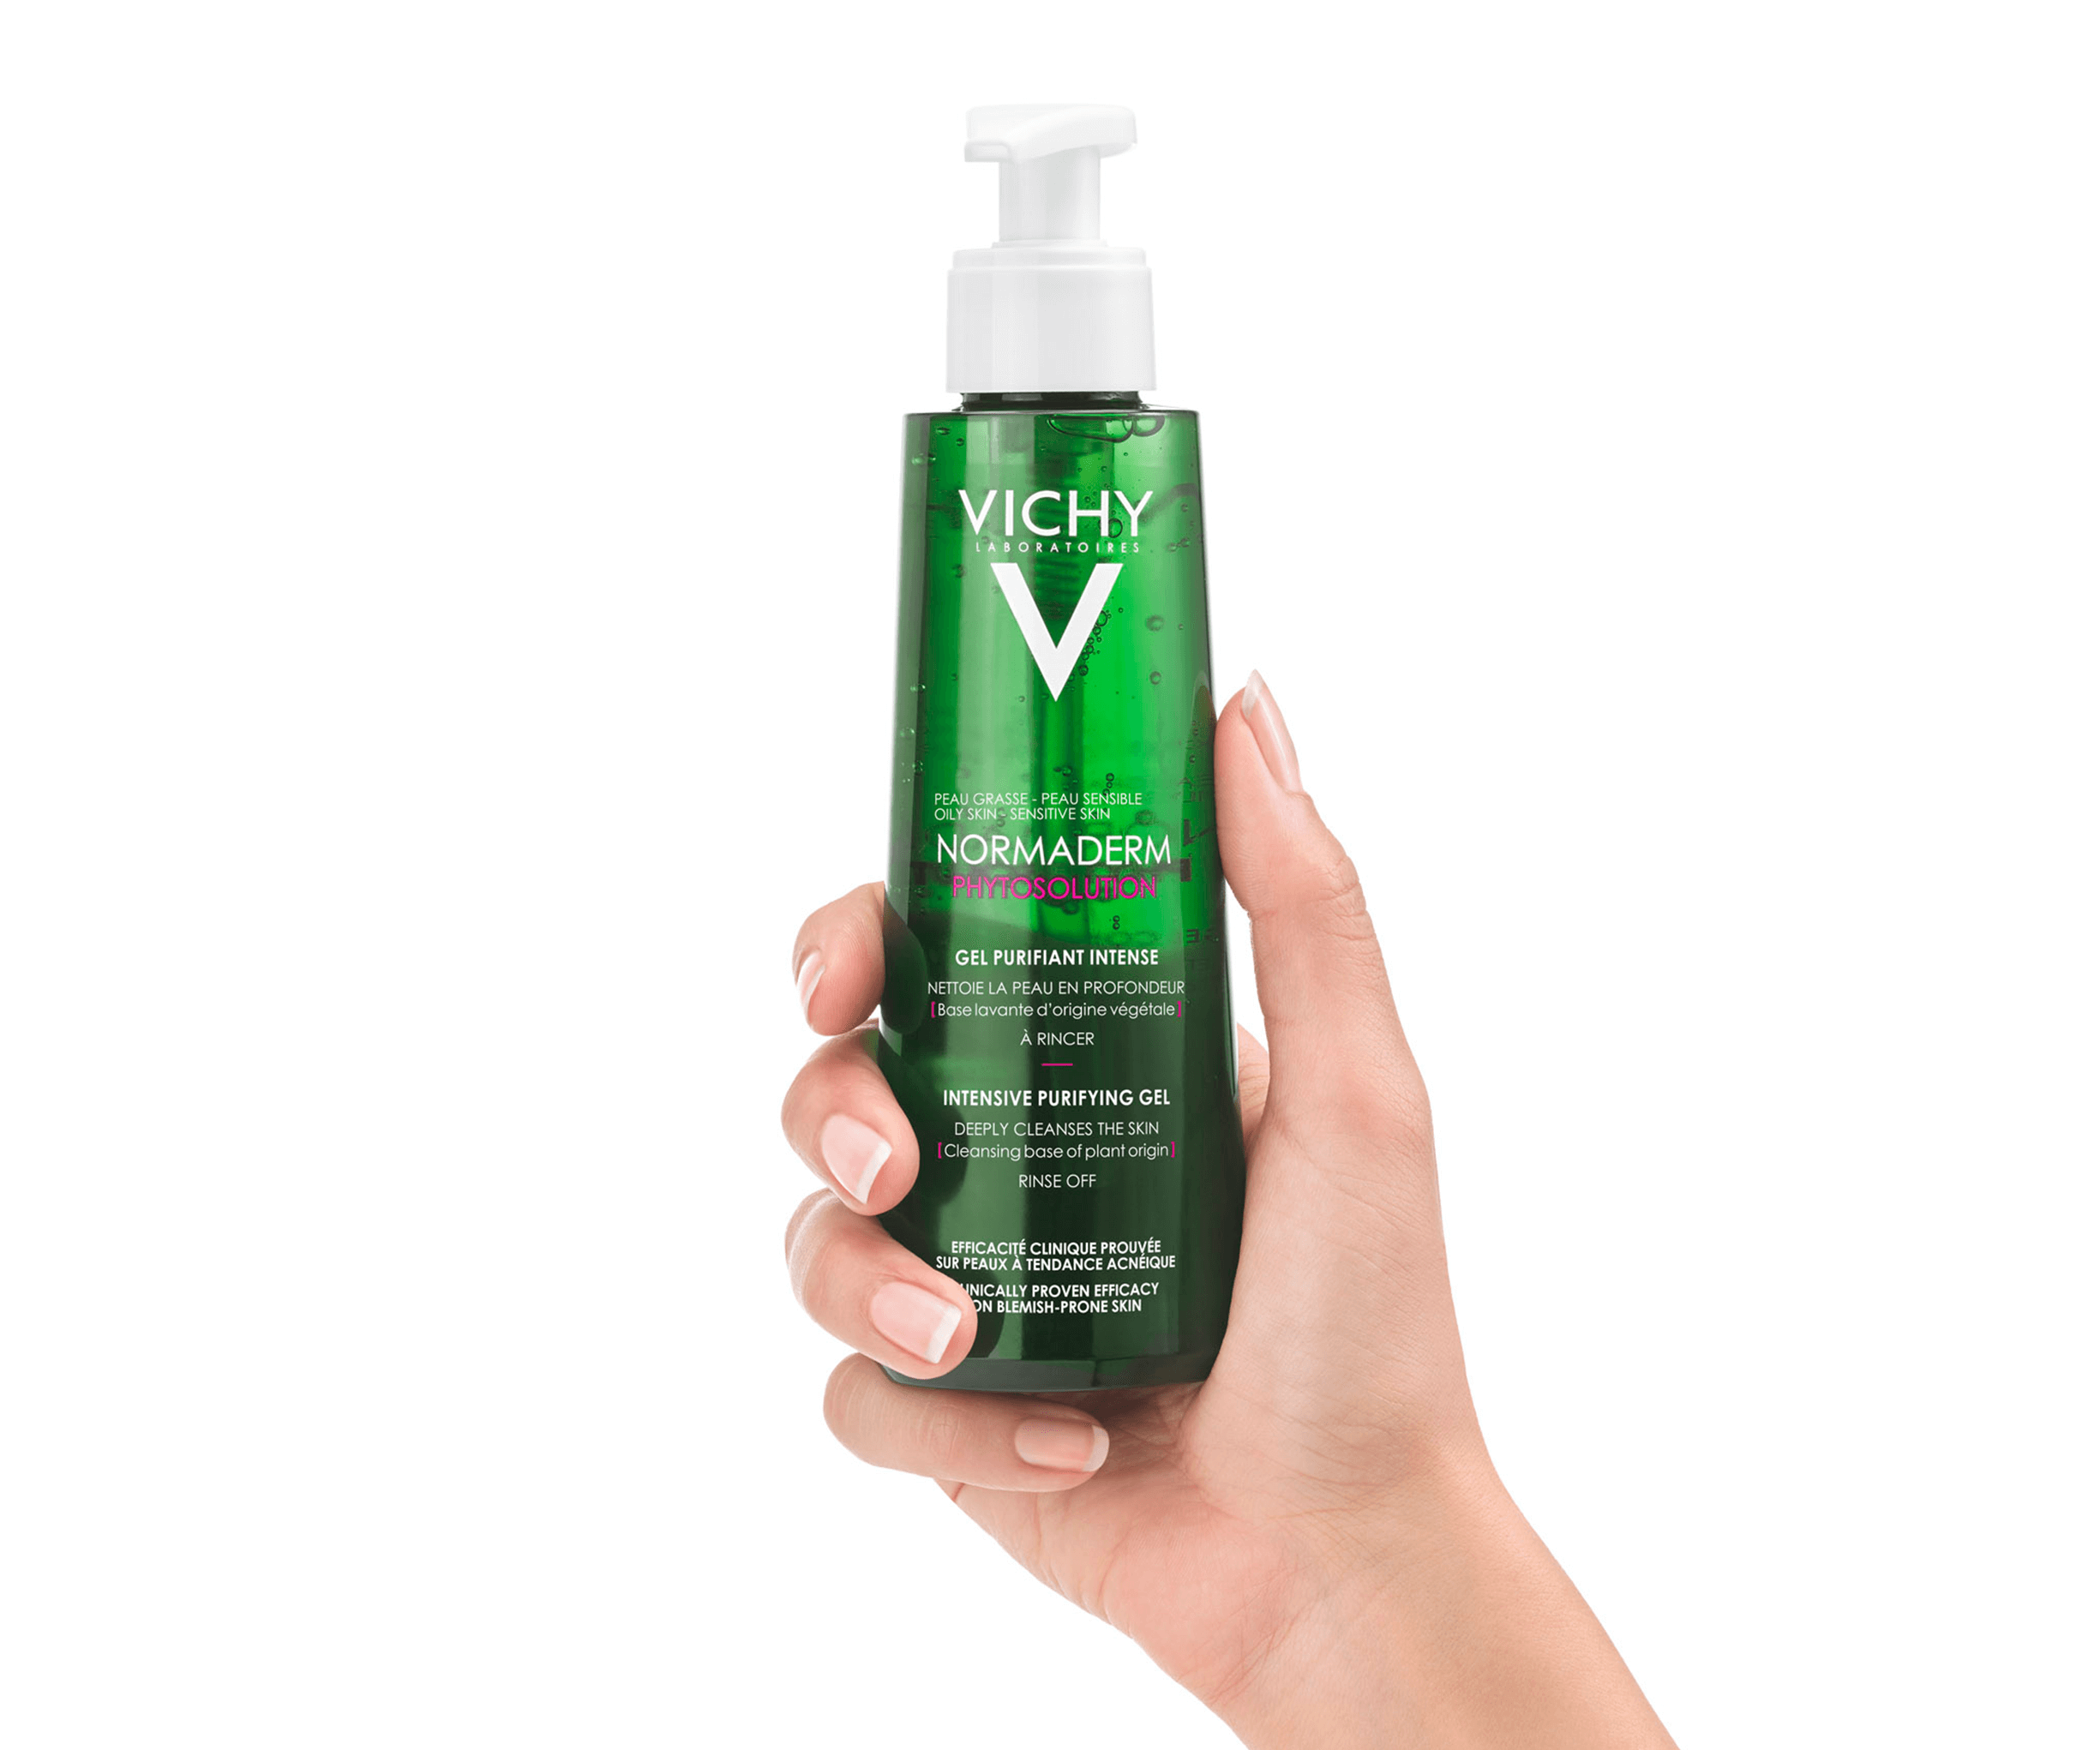 Sữa rửa mặt Vichy Normaderm có tác dụng chăm sóc và làm sạch da mặt, giúp da mịn màng và trắng sáng hơn. Không chỉ đảm bảo chất lượng, sản phẩm còn được bán với giá hơi rẻ rất hợp lý cho tất cả các thành phần trong xã hội.